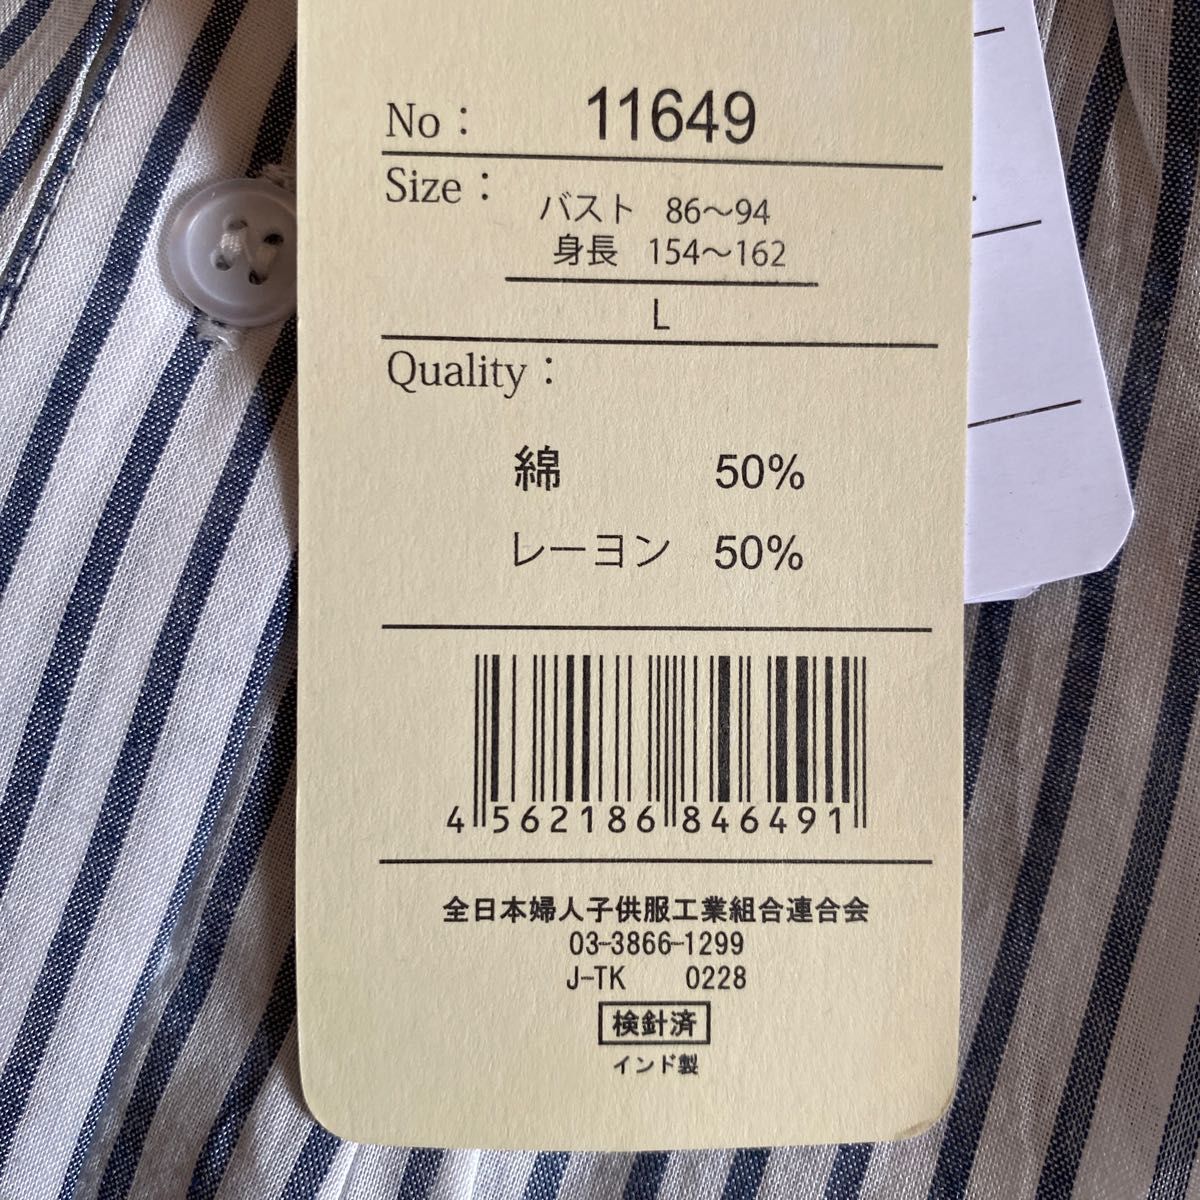 全日本婦人子供服工業組合連合会 (L) ブラウス 比翼ボタン フリル 半袖 通販